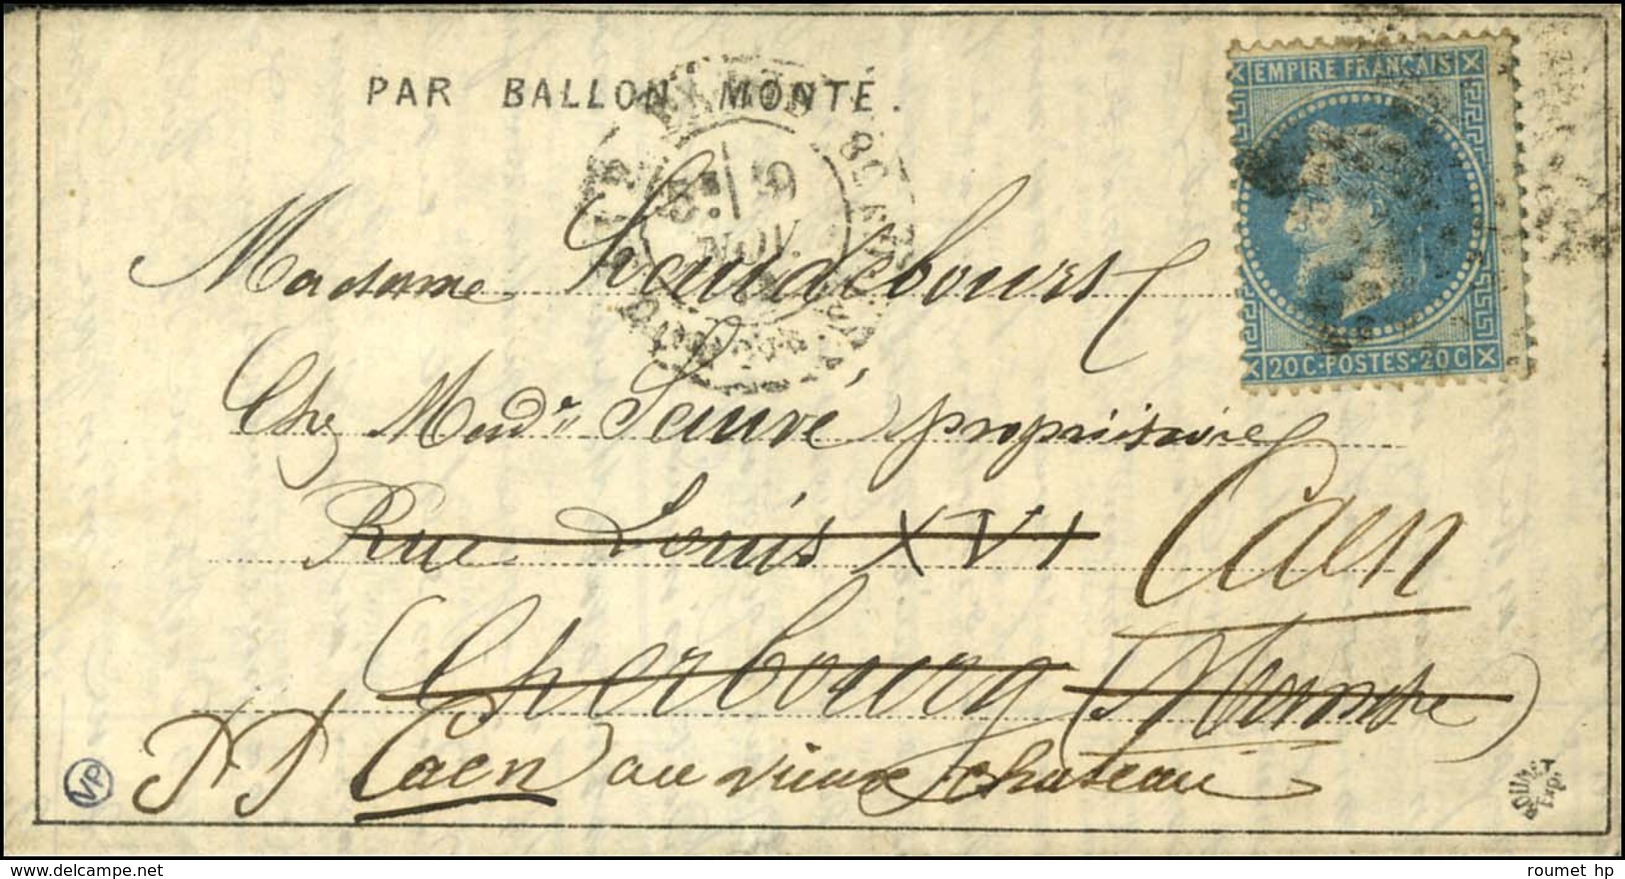 Etoile 20 / N° 29 Càd PARIS / R. St DOMque St Gn 58 9 NOV. 70 Sur Dépêche-Ballon N° 4 Pour Cherbourg Réexpédiée à Caen,  - Krieg 1870